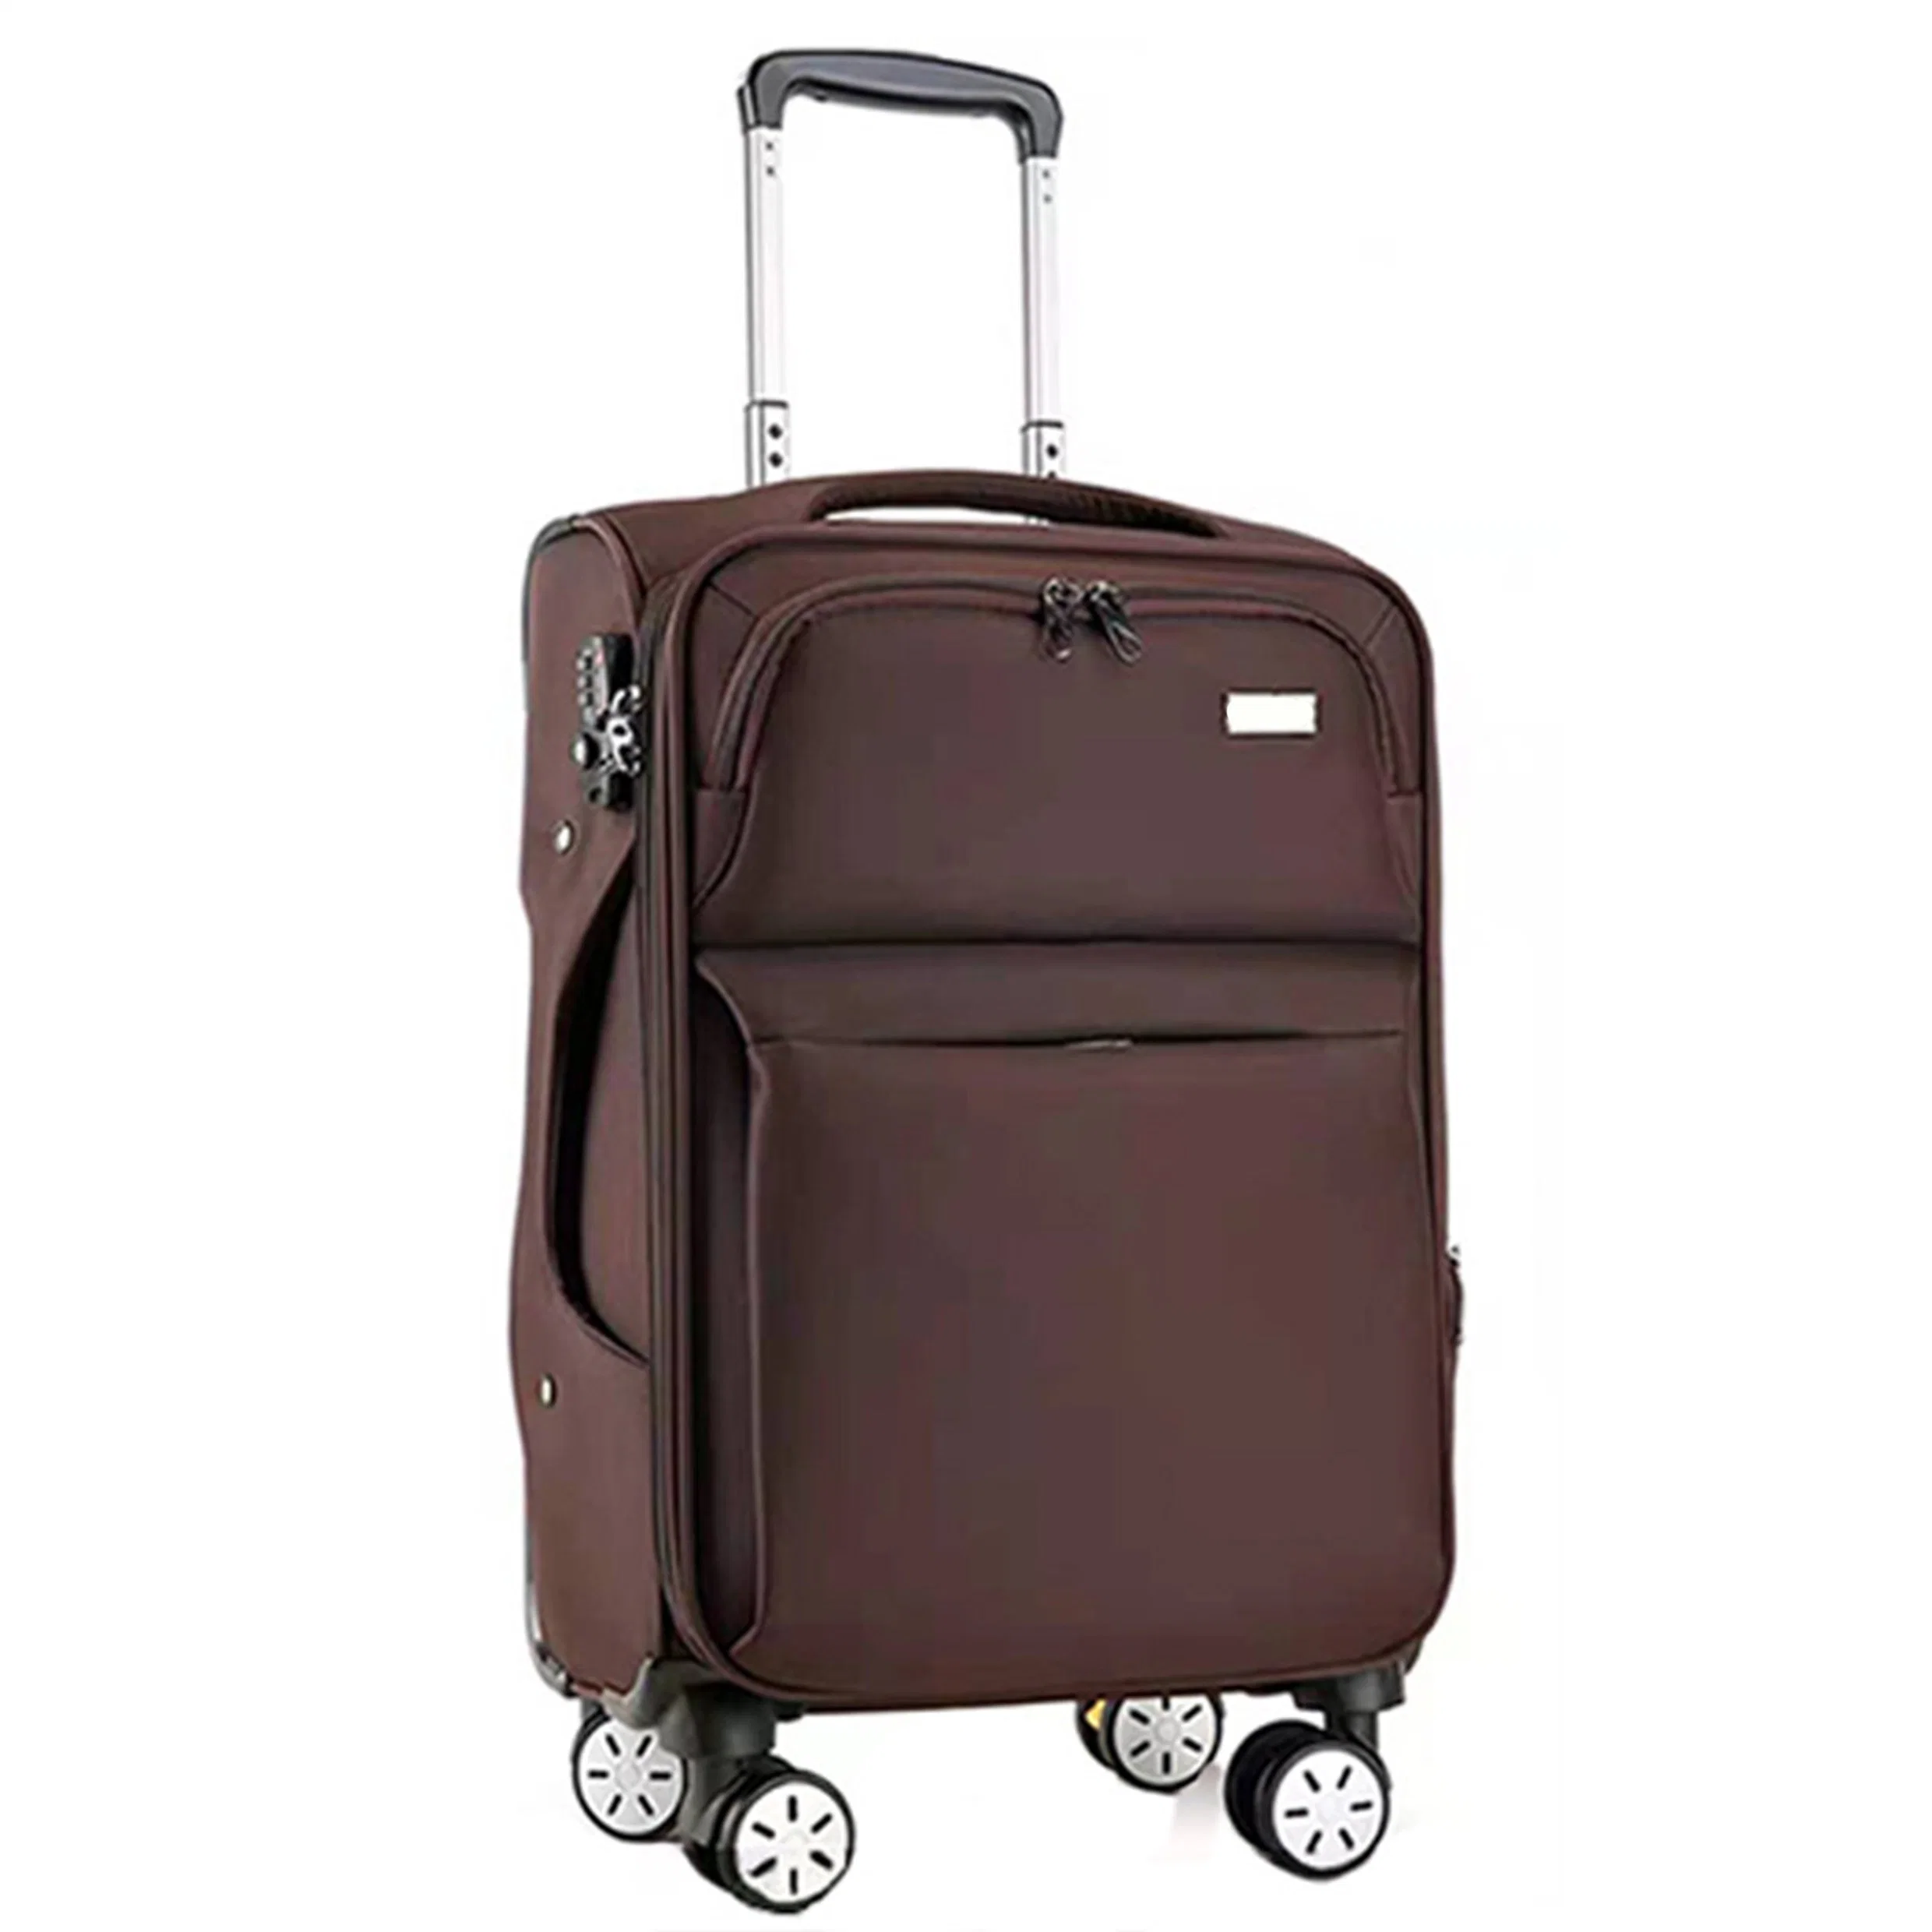 Bolsas de viaje Trolley maletas Conjuntos de equipaje maleta de viaje Trolley Valigia Maletín Suitcase equipaje de viaje para puertas al aire libre